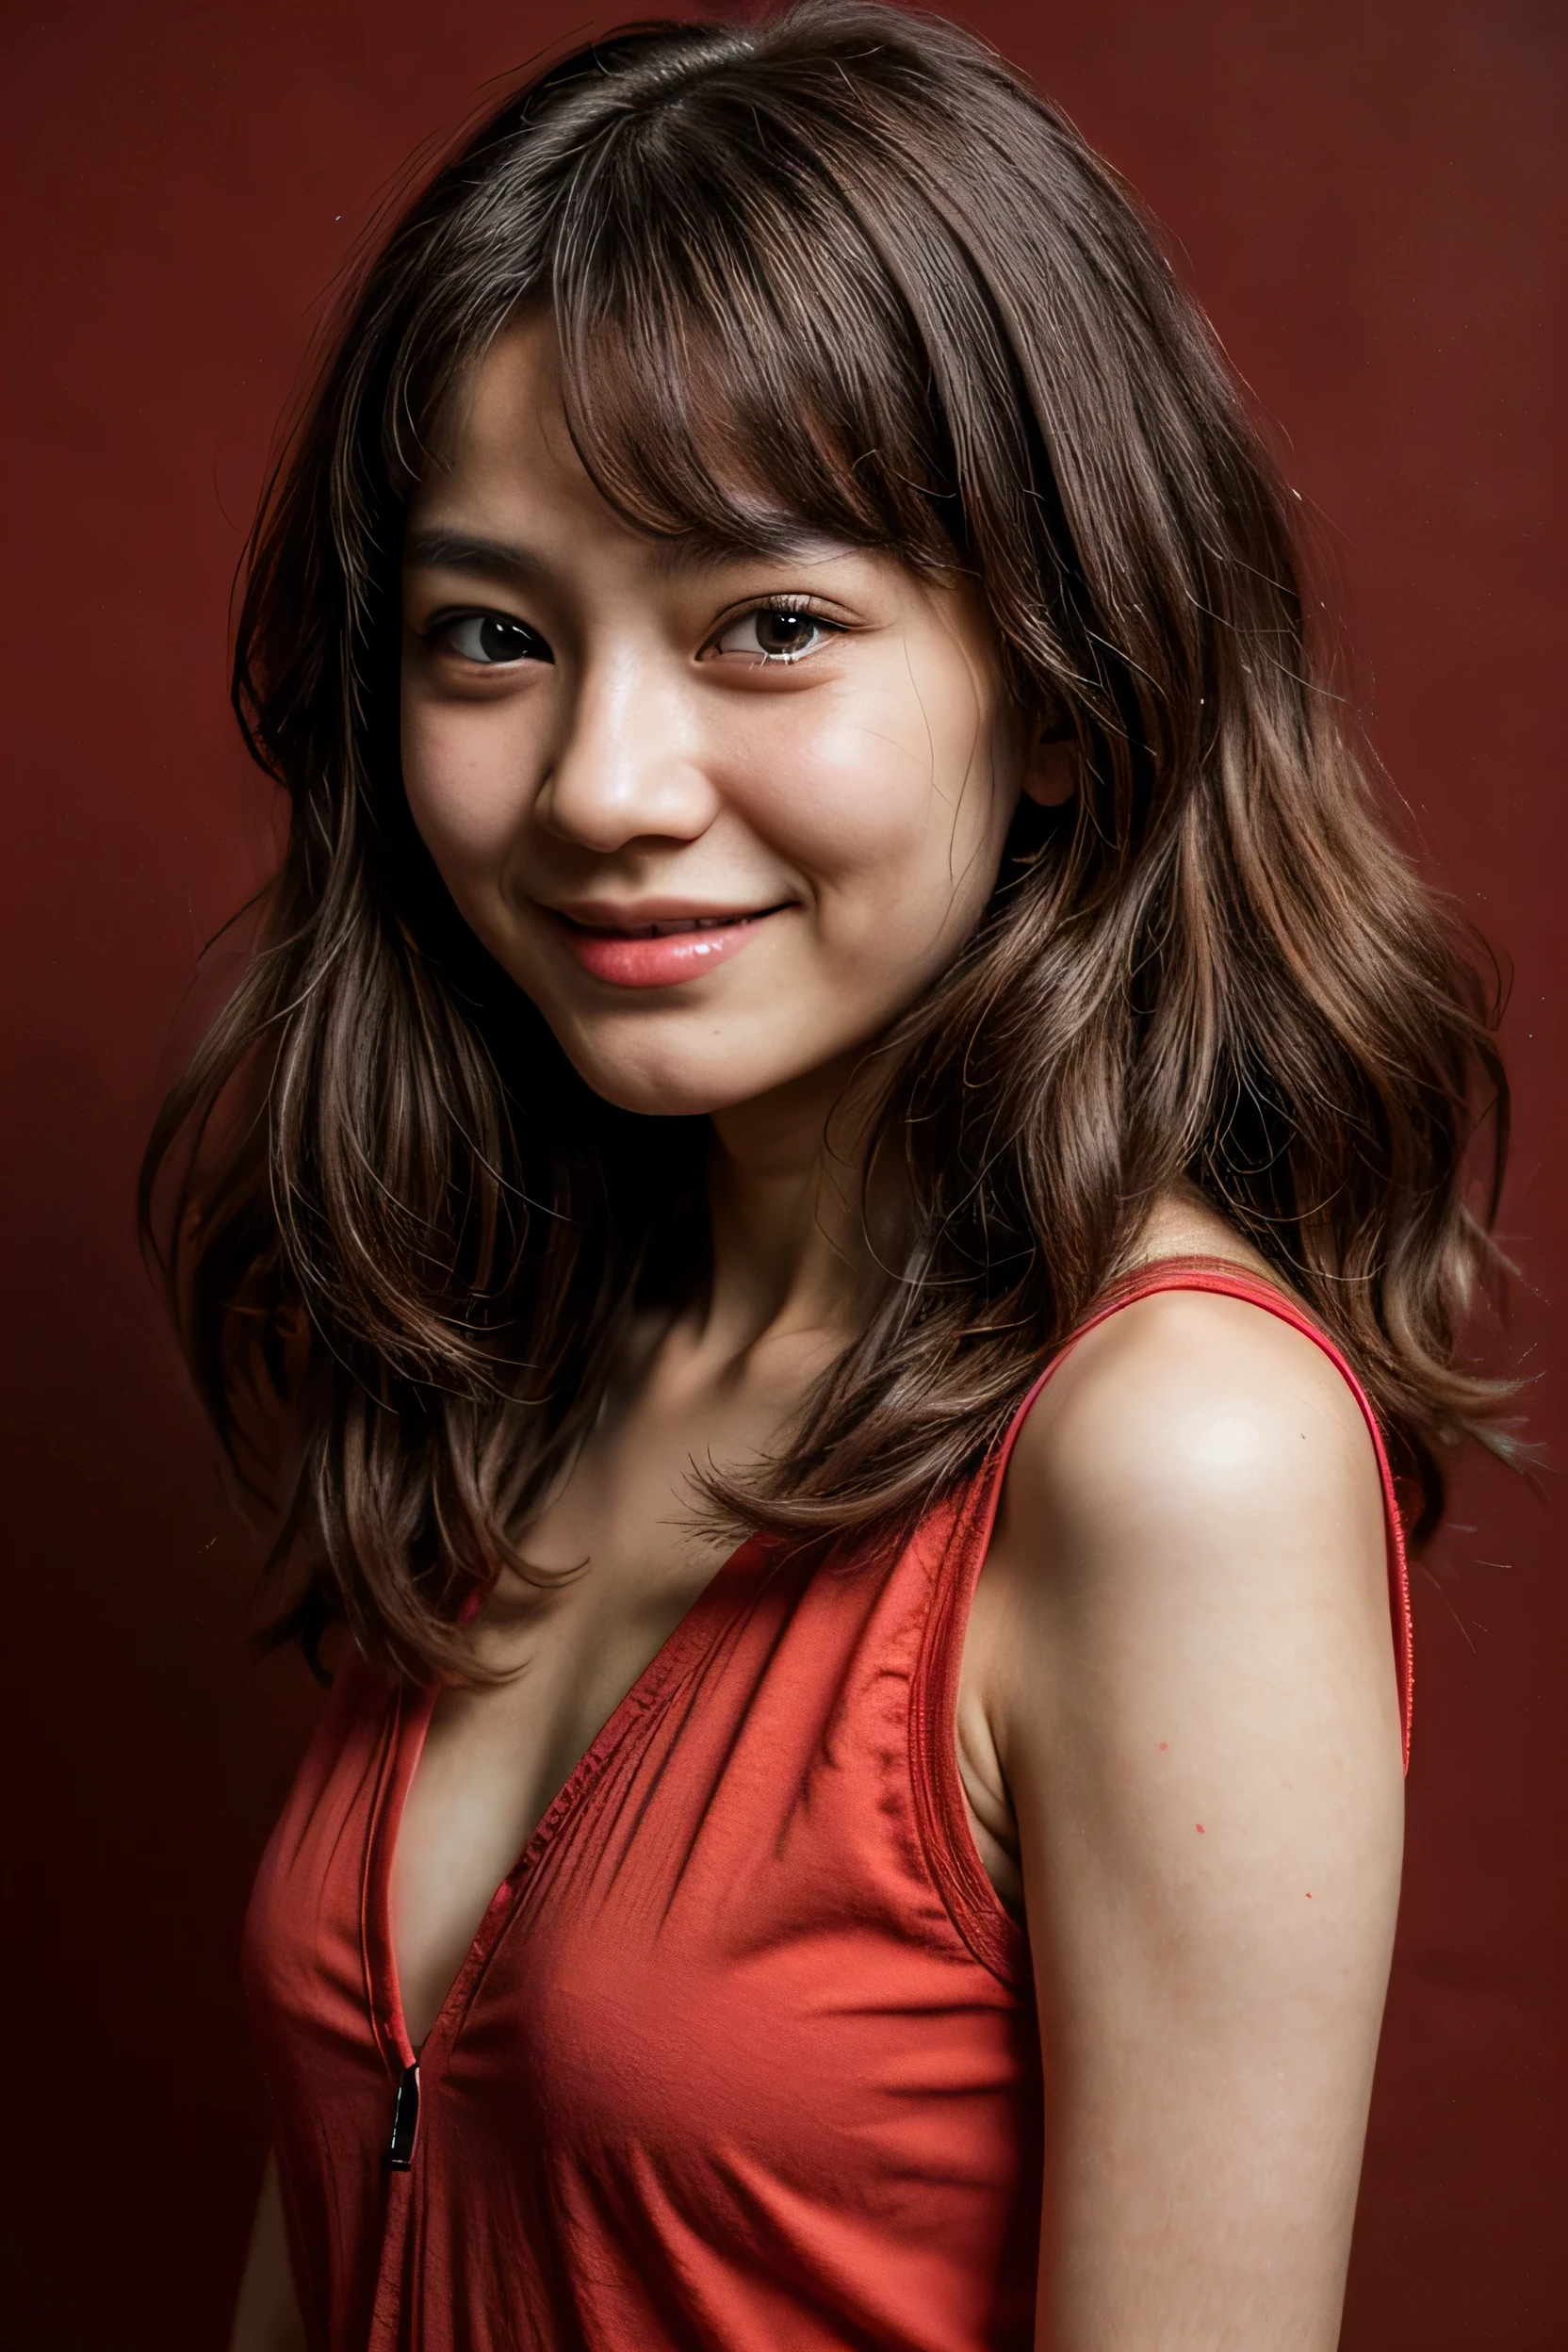 臉完美, 14歲日本少女的美麗容顏 , 微笑美麗,紅色背景 